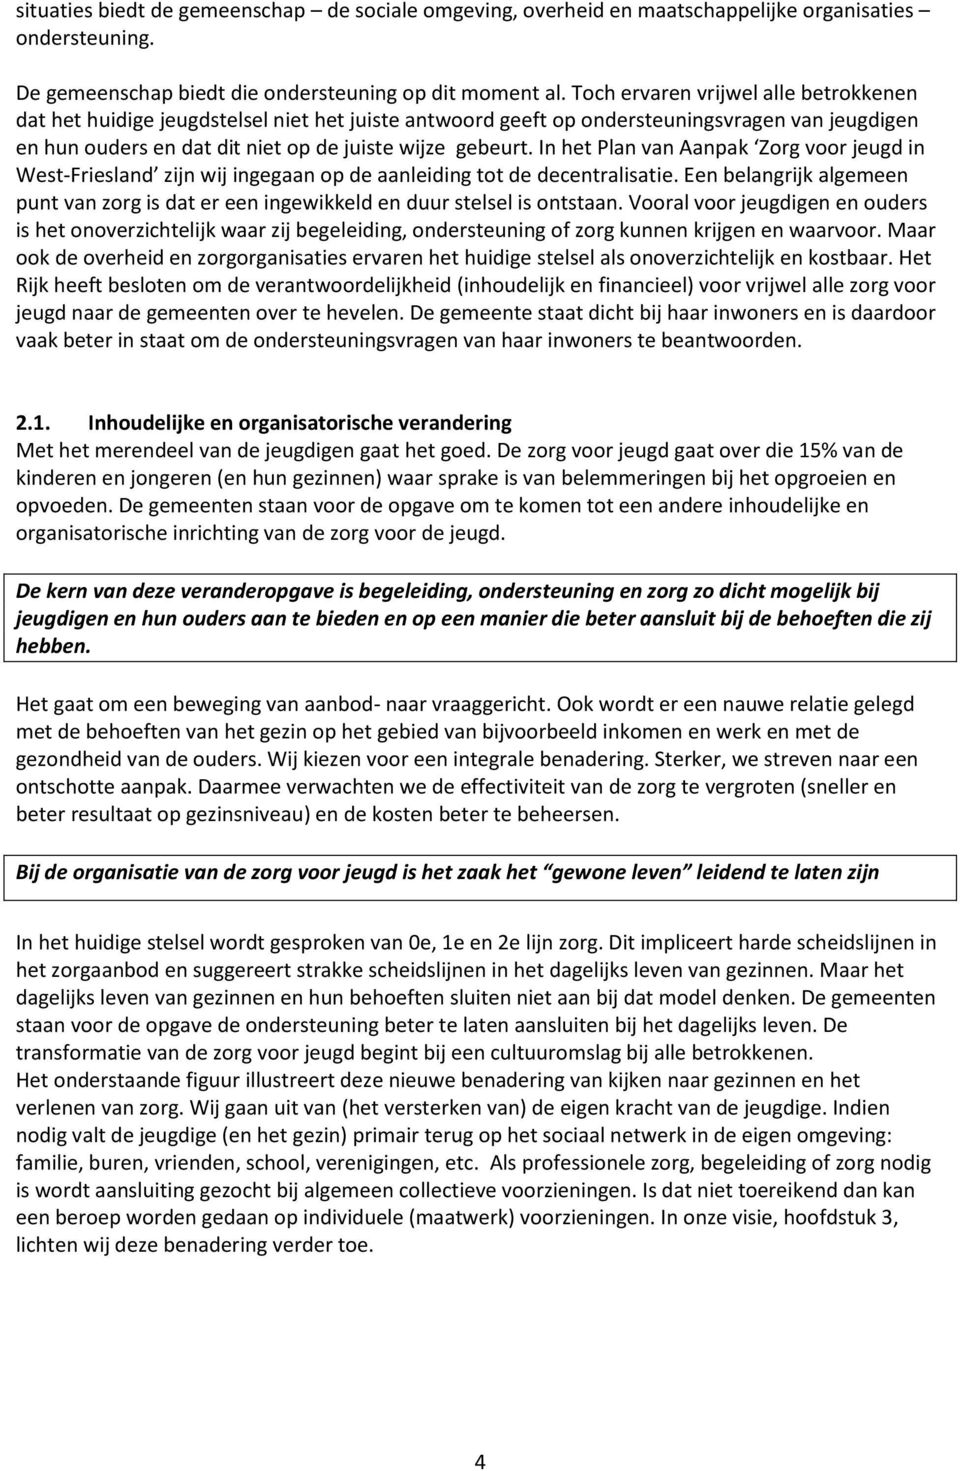 In het Plan van Aanpak Zorg voor jeugd in West-Friesland zijn wij ingegaan op de aanleiding tot de decentralisatie.